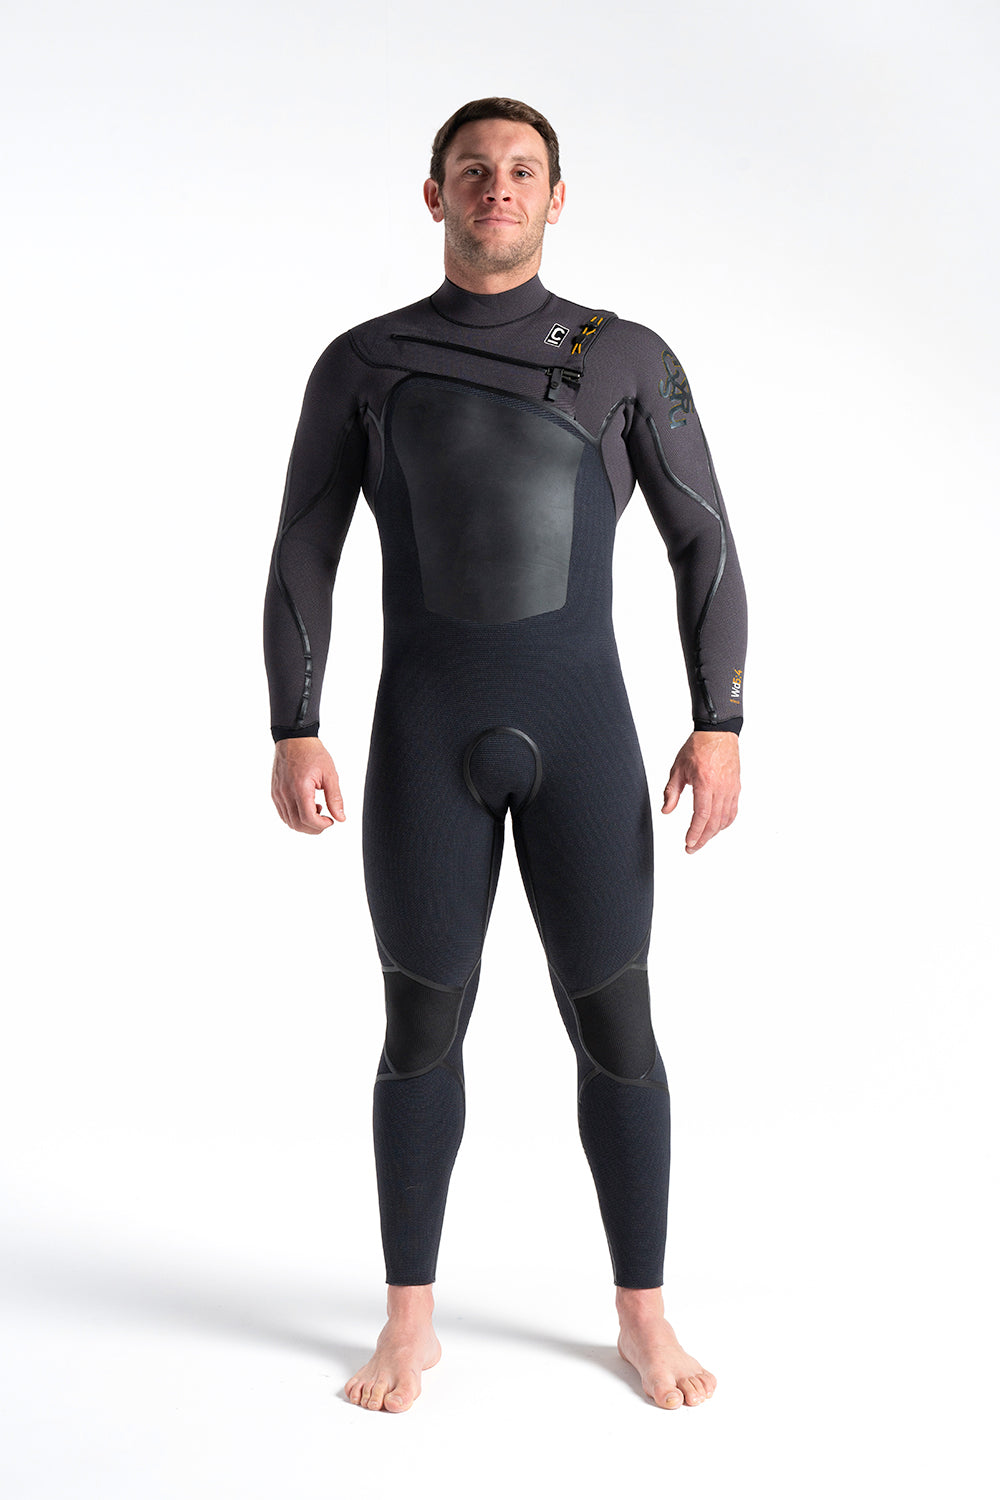 c-skins-wired-chest-zip-5-4-liquid-seams-halo-x-db8-winter-wetsuit-galway-ireland-blacksheepsurfco-front